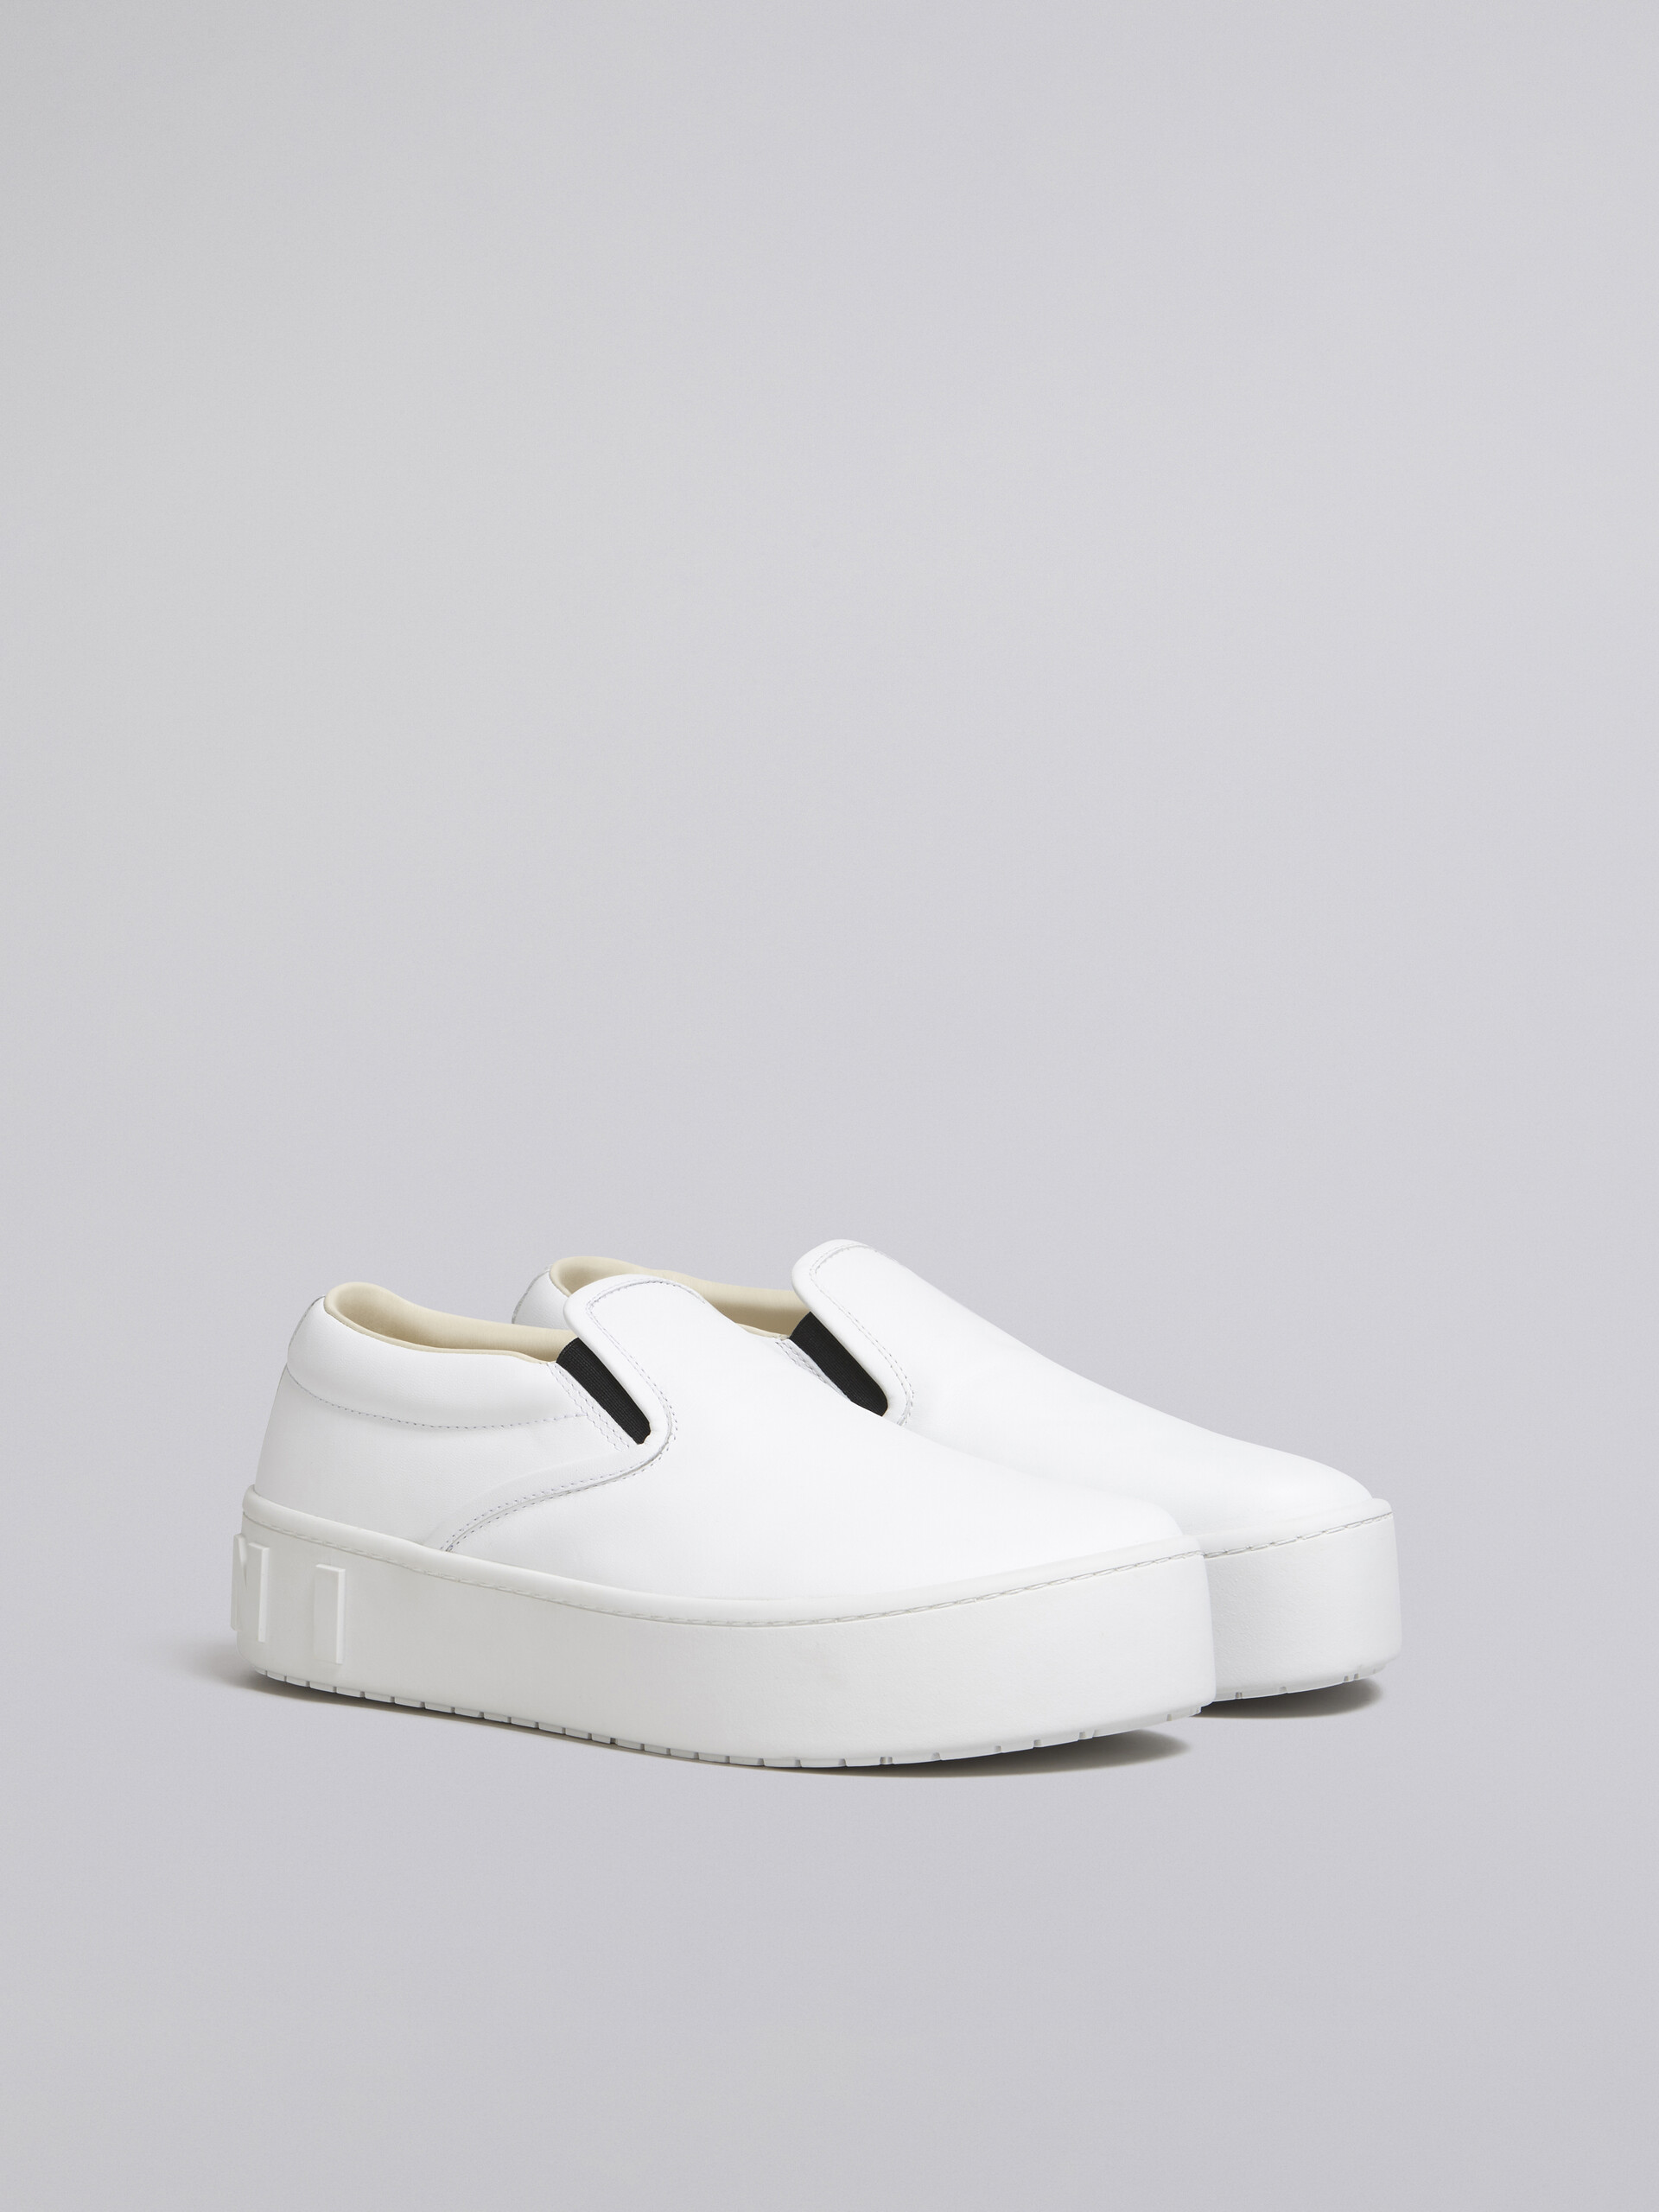 Slip-on-Sneaker aus weißem Kalbsleder mit hervorgehobenem Marni Maxi-Logo - Sneakers - Image 2